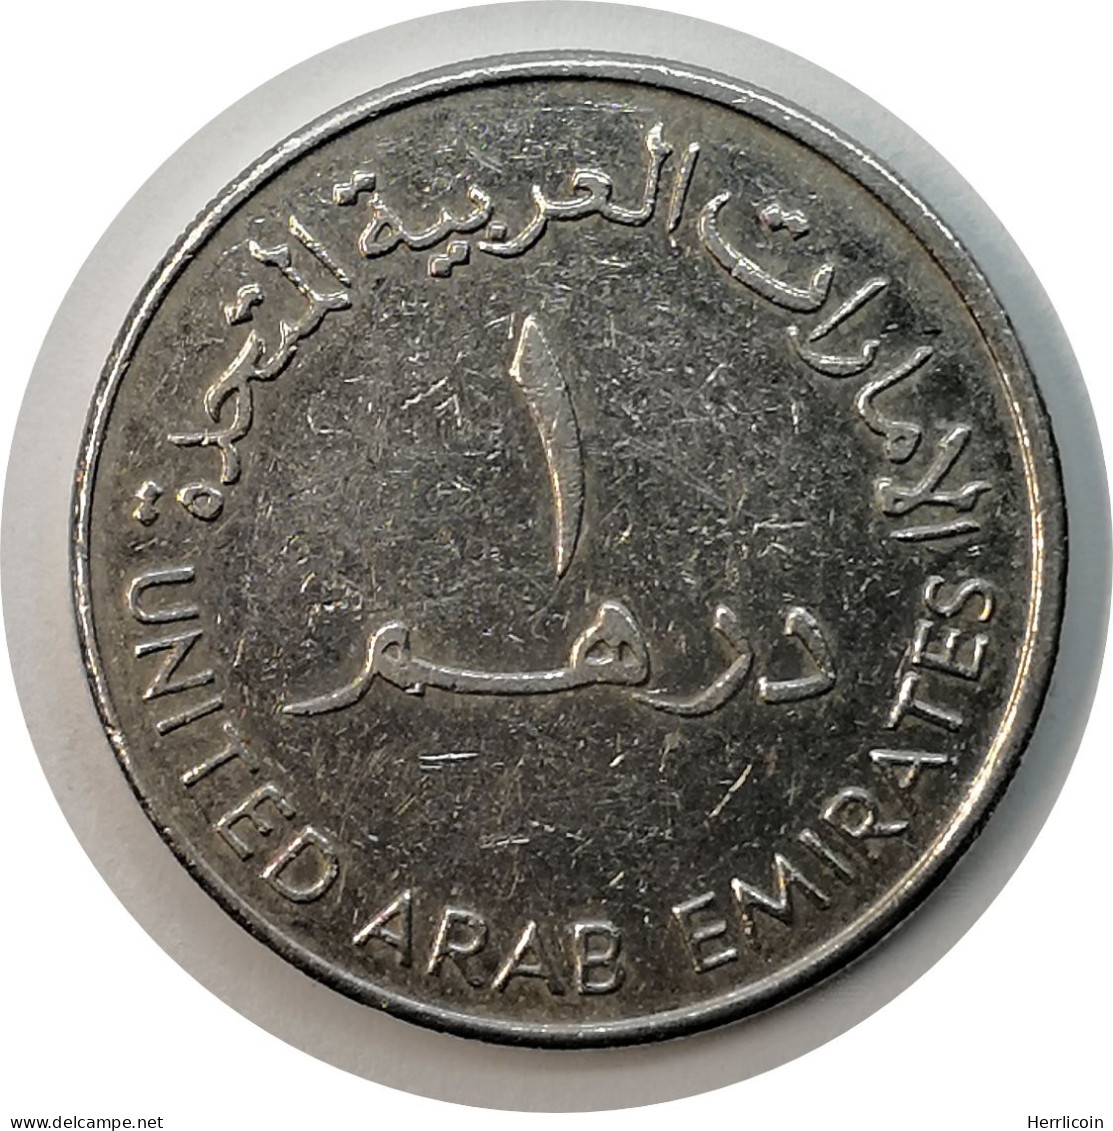 Monnaie Emirats Arabes Unis - 1988 - 1 Dirham - Sultan Zayed Bin Grand Module - Emirats Arabes Unis